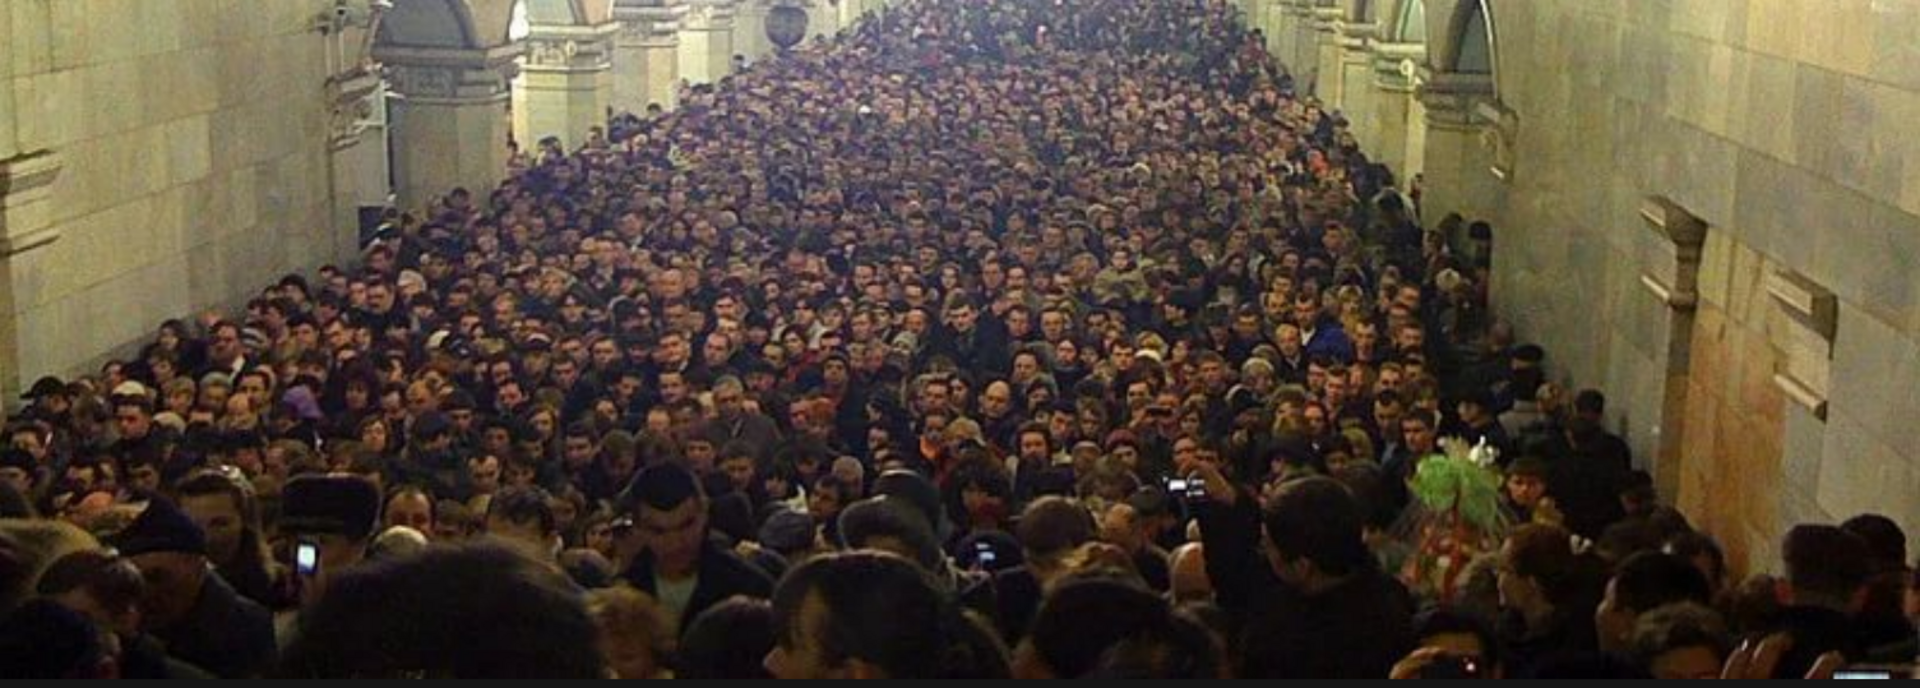 Какой человек живет в москве. Давка в метро час пик Москве. Час пик в метро в Москве. Толпа людей в метро. Московское метро толпа.